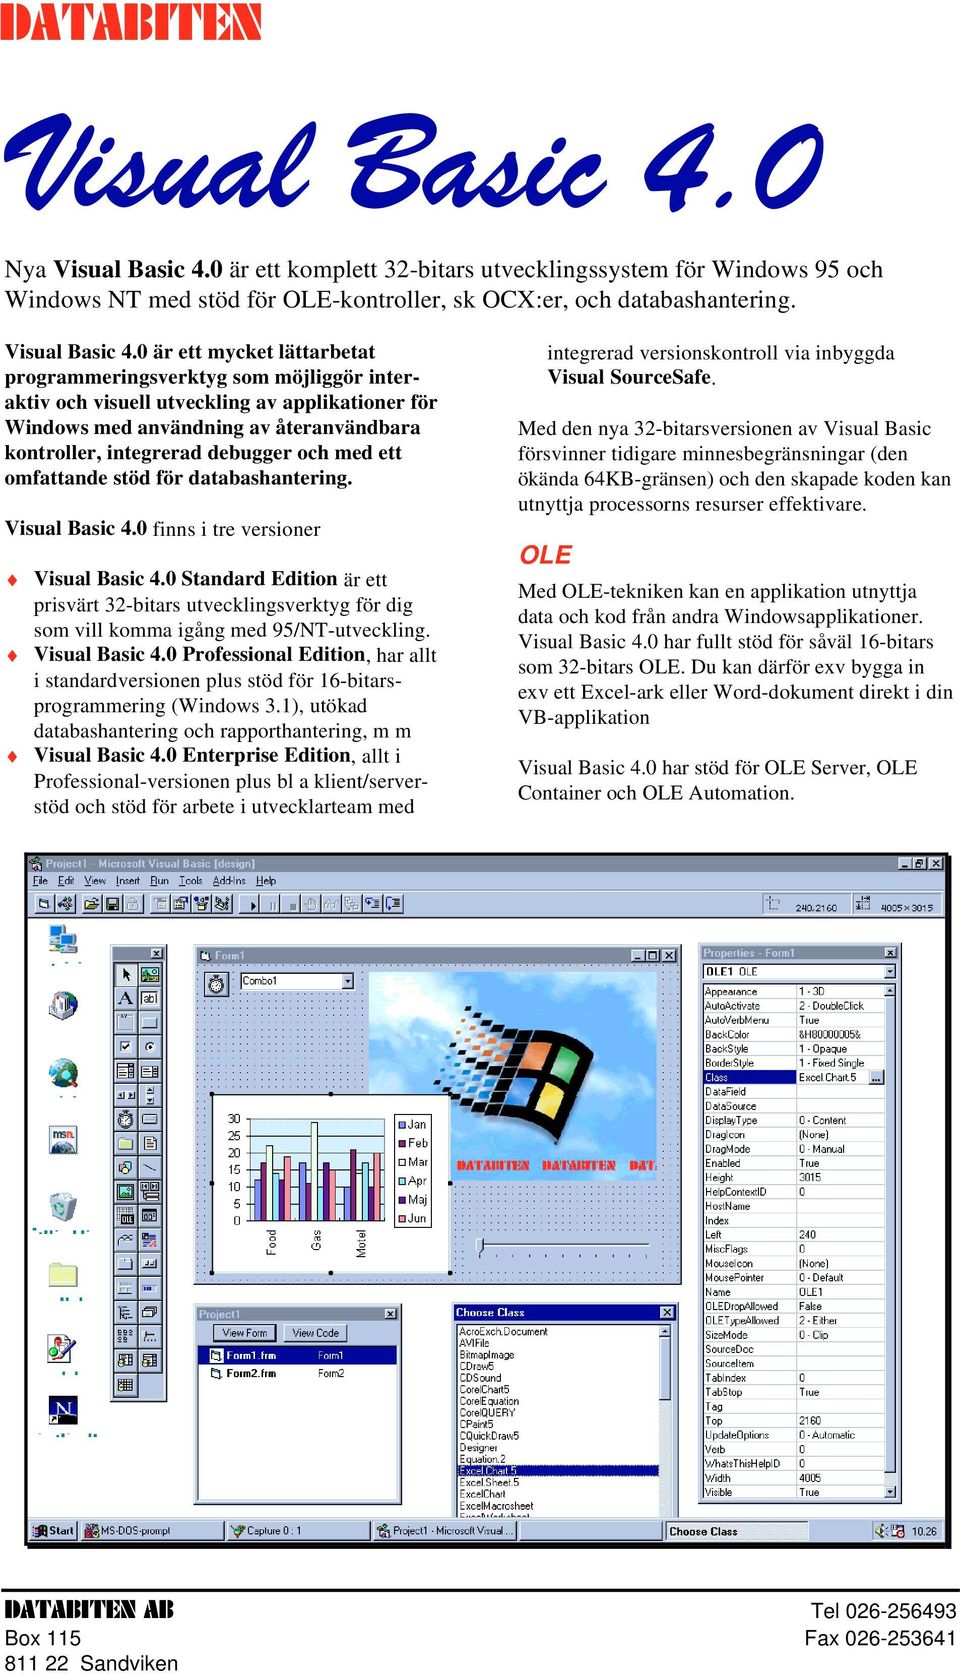 0 är ett komplett 32-bitars utvecklingssystem för Windows 95 och Windows NT med stöd för OLE-kontroller, sk OCX:er, och databashantering. Visual Basic 4.